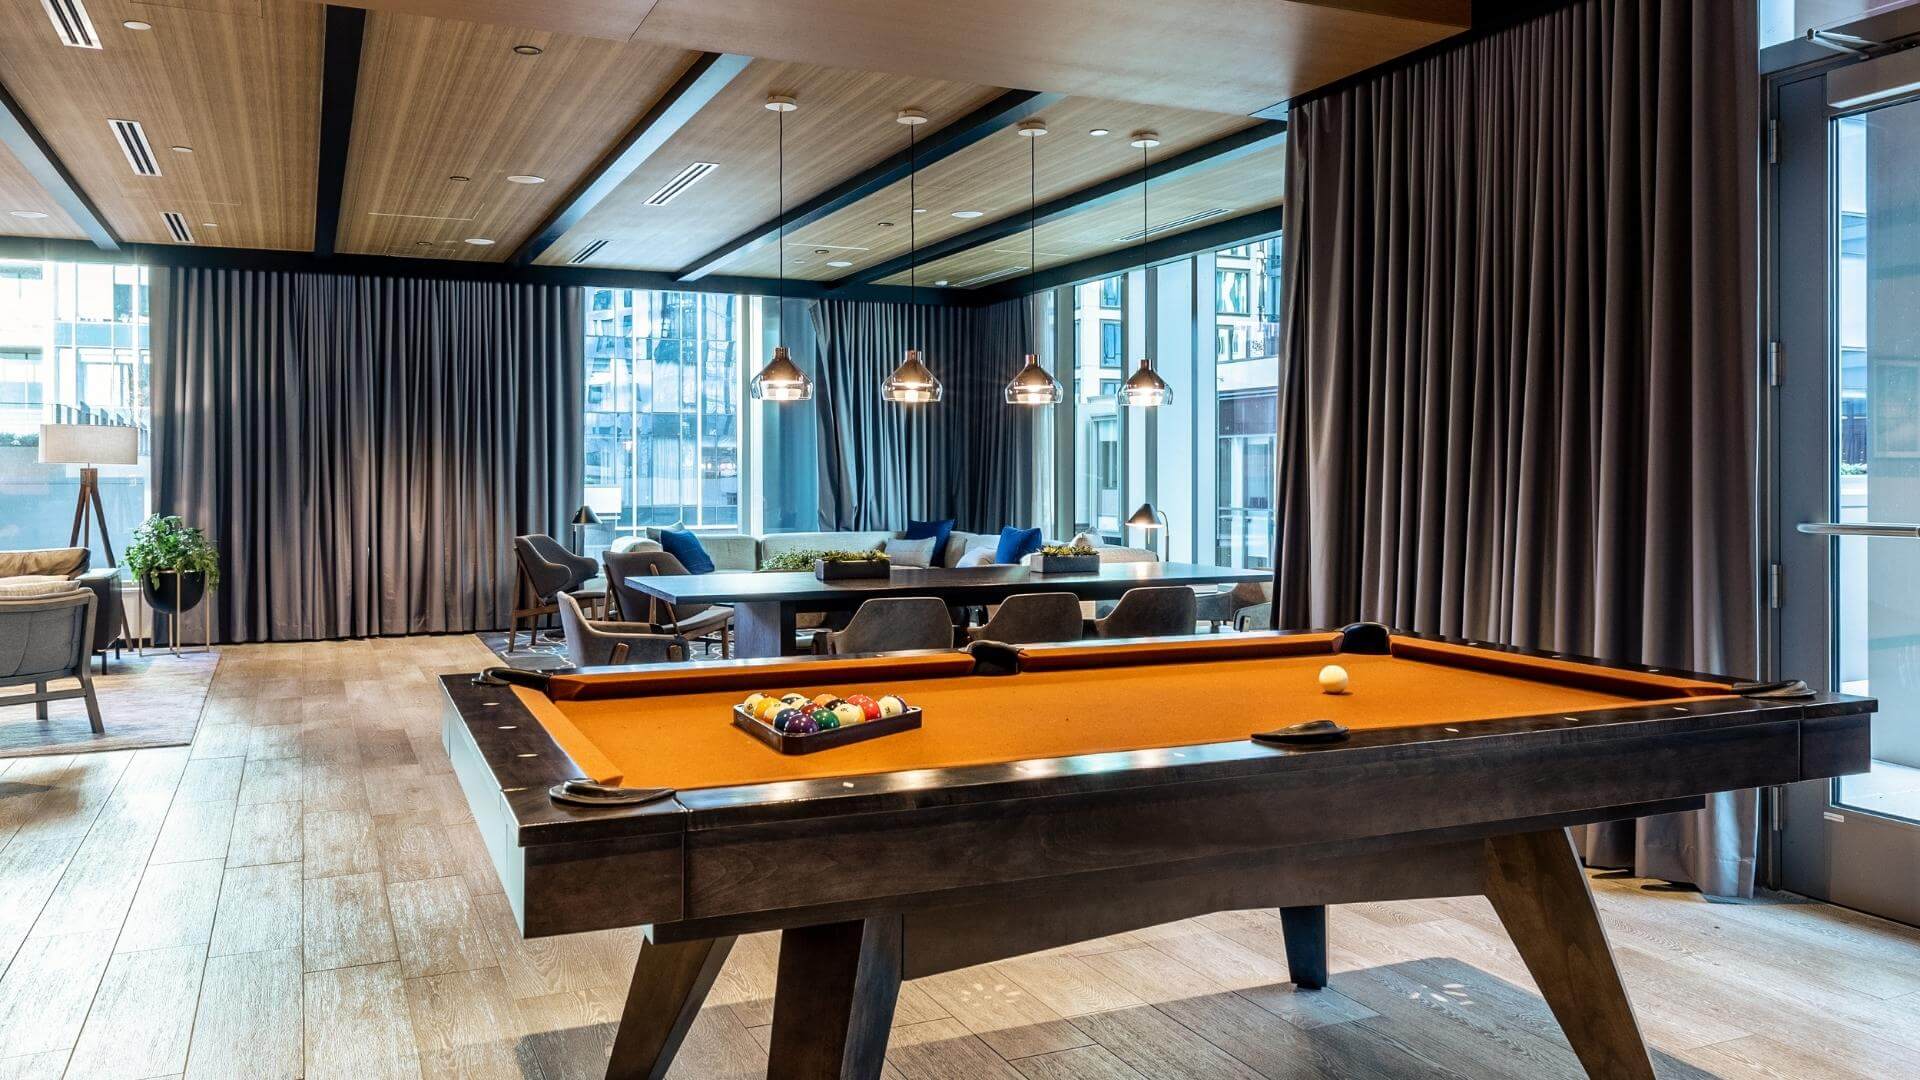 Billiard/Pool Table